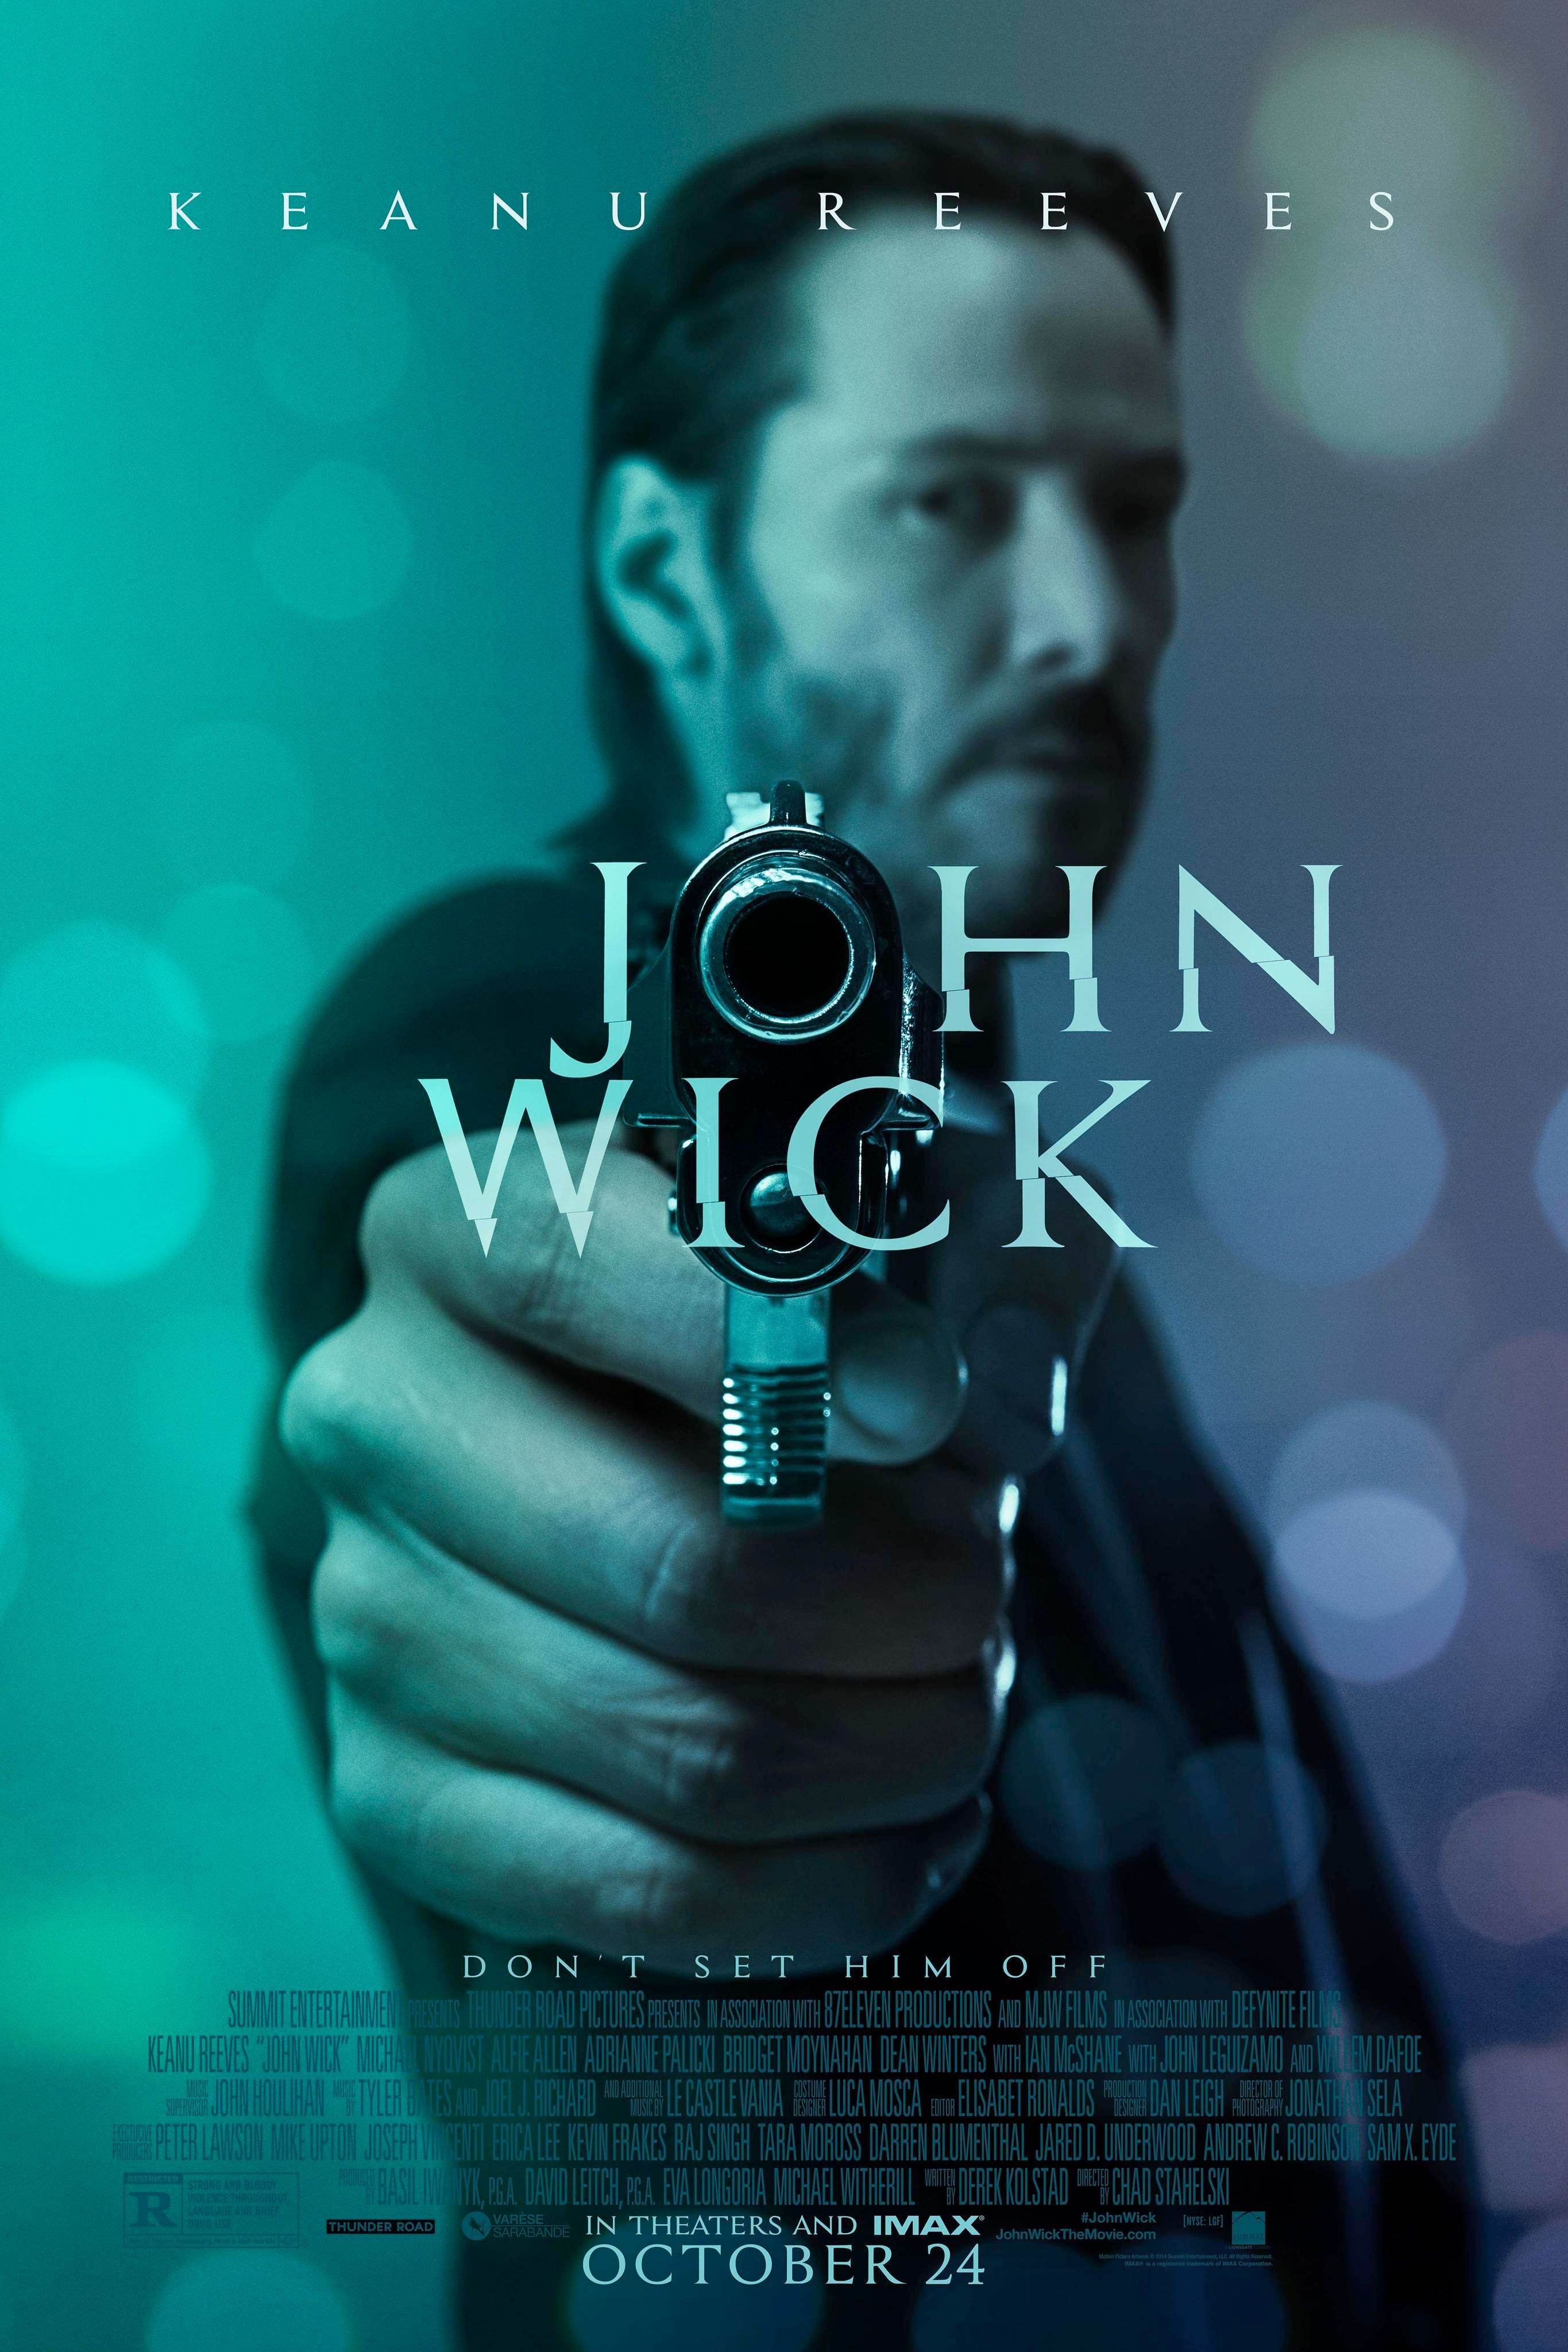 John Wick 2' plot details revealed